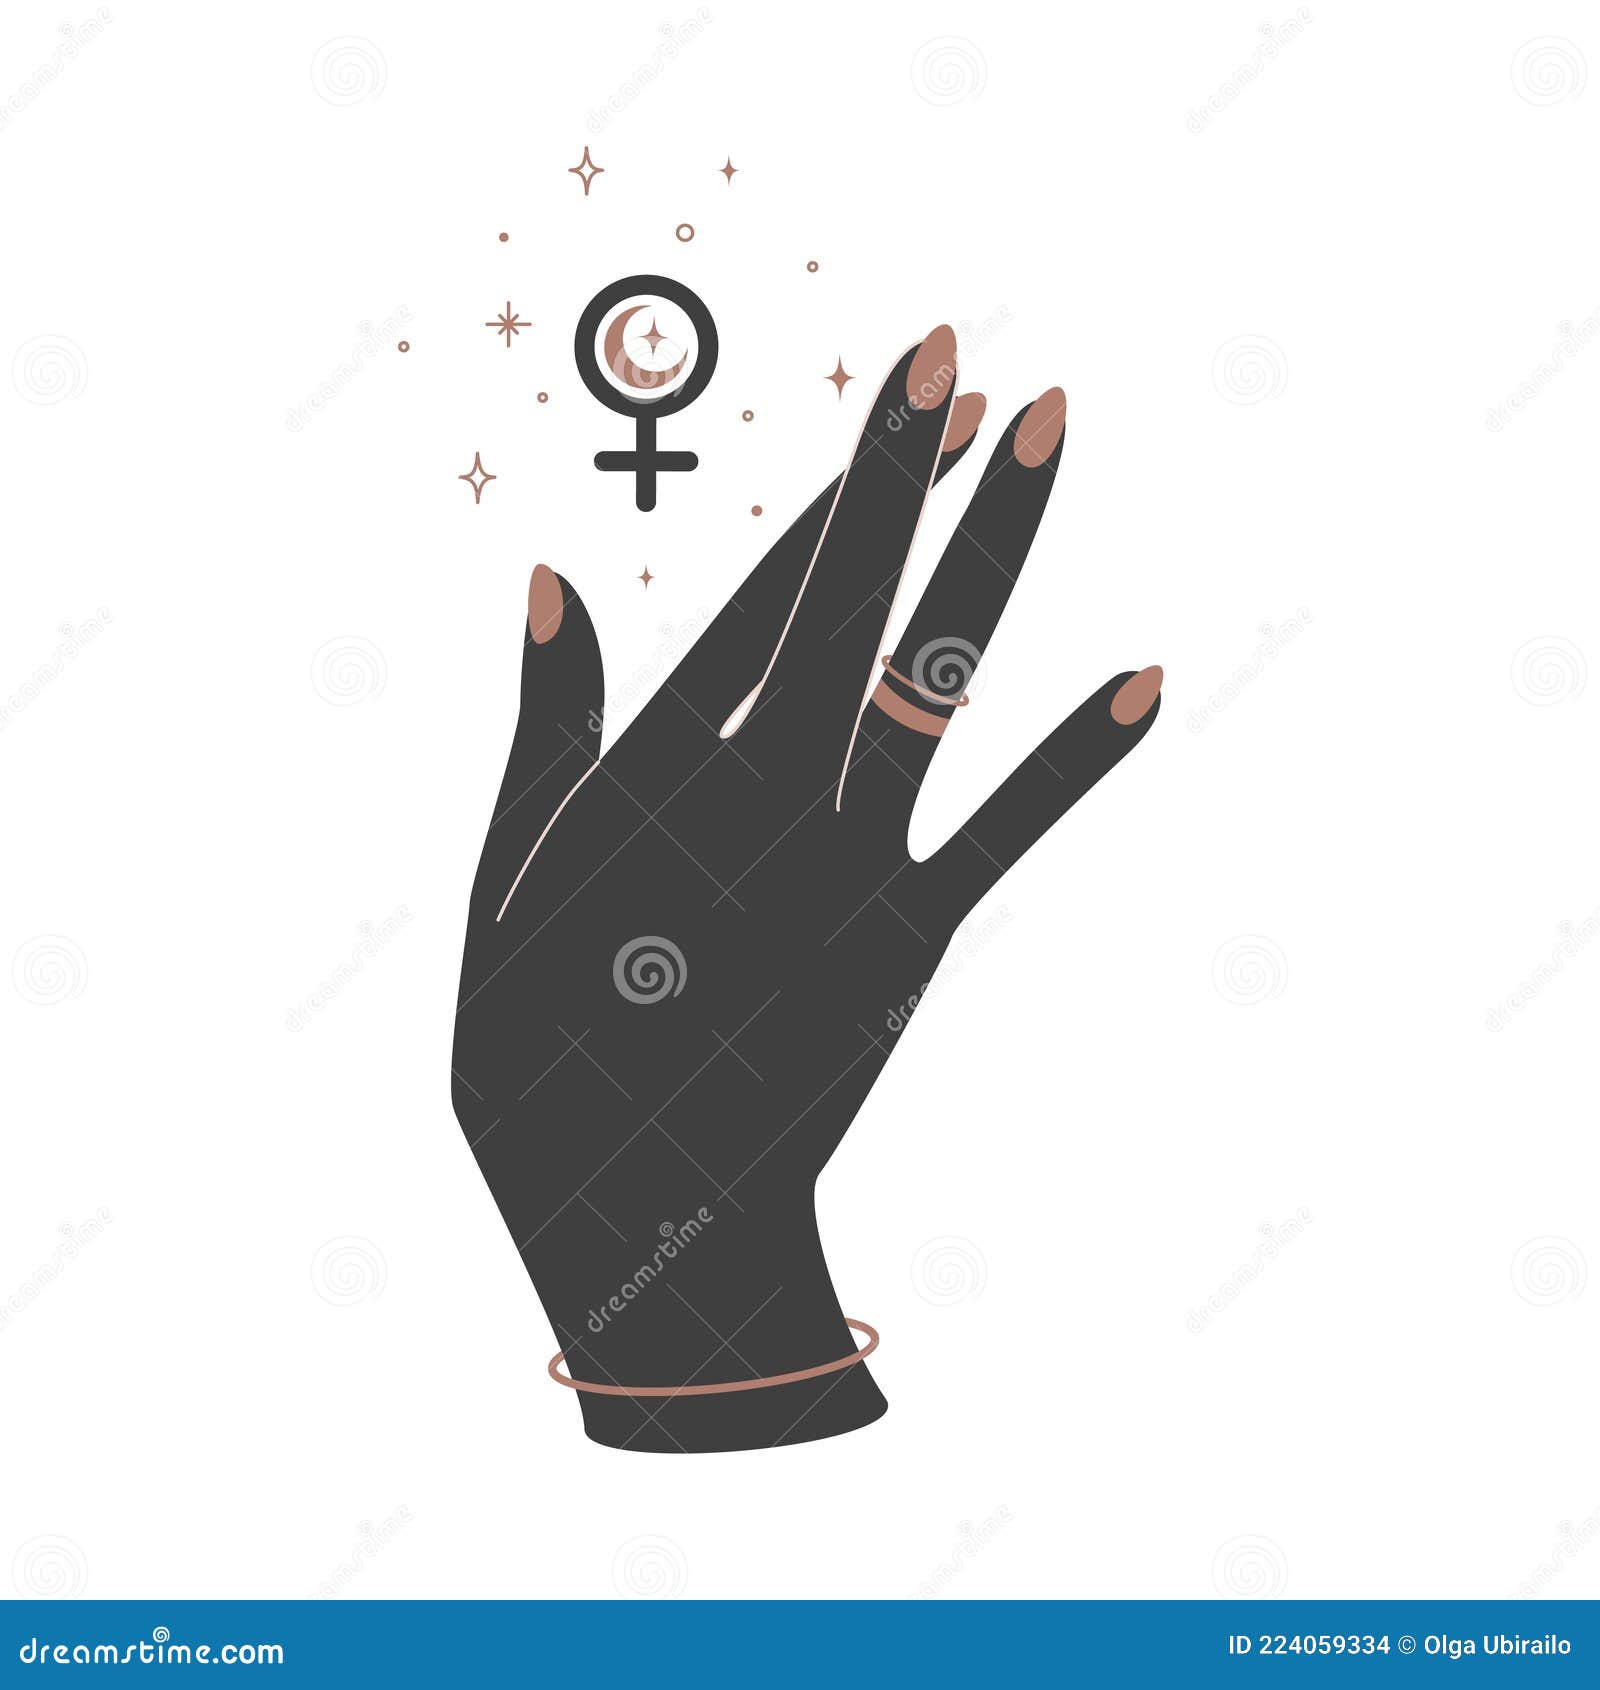 mains de femme magique avec phases de lune. alchimie talisman